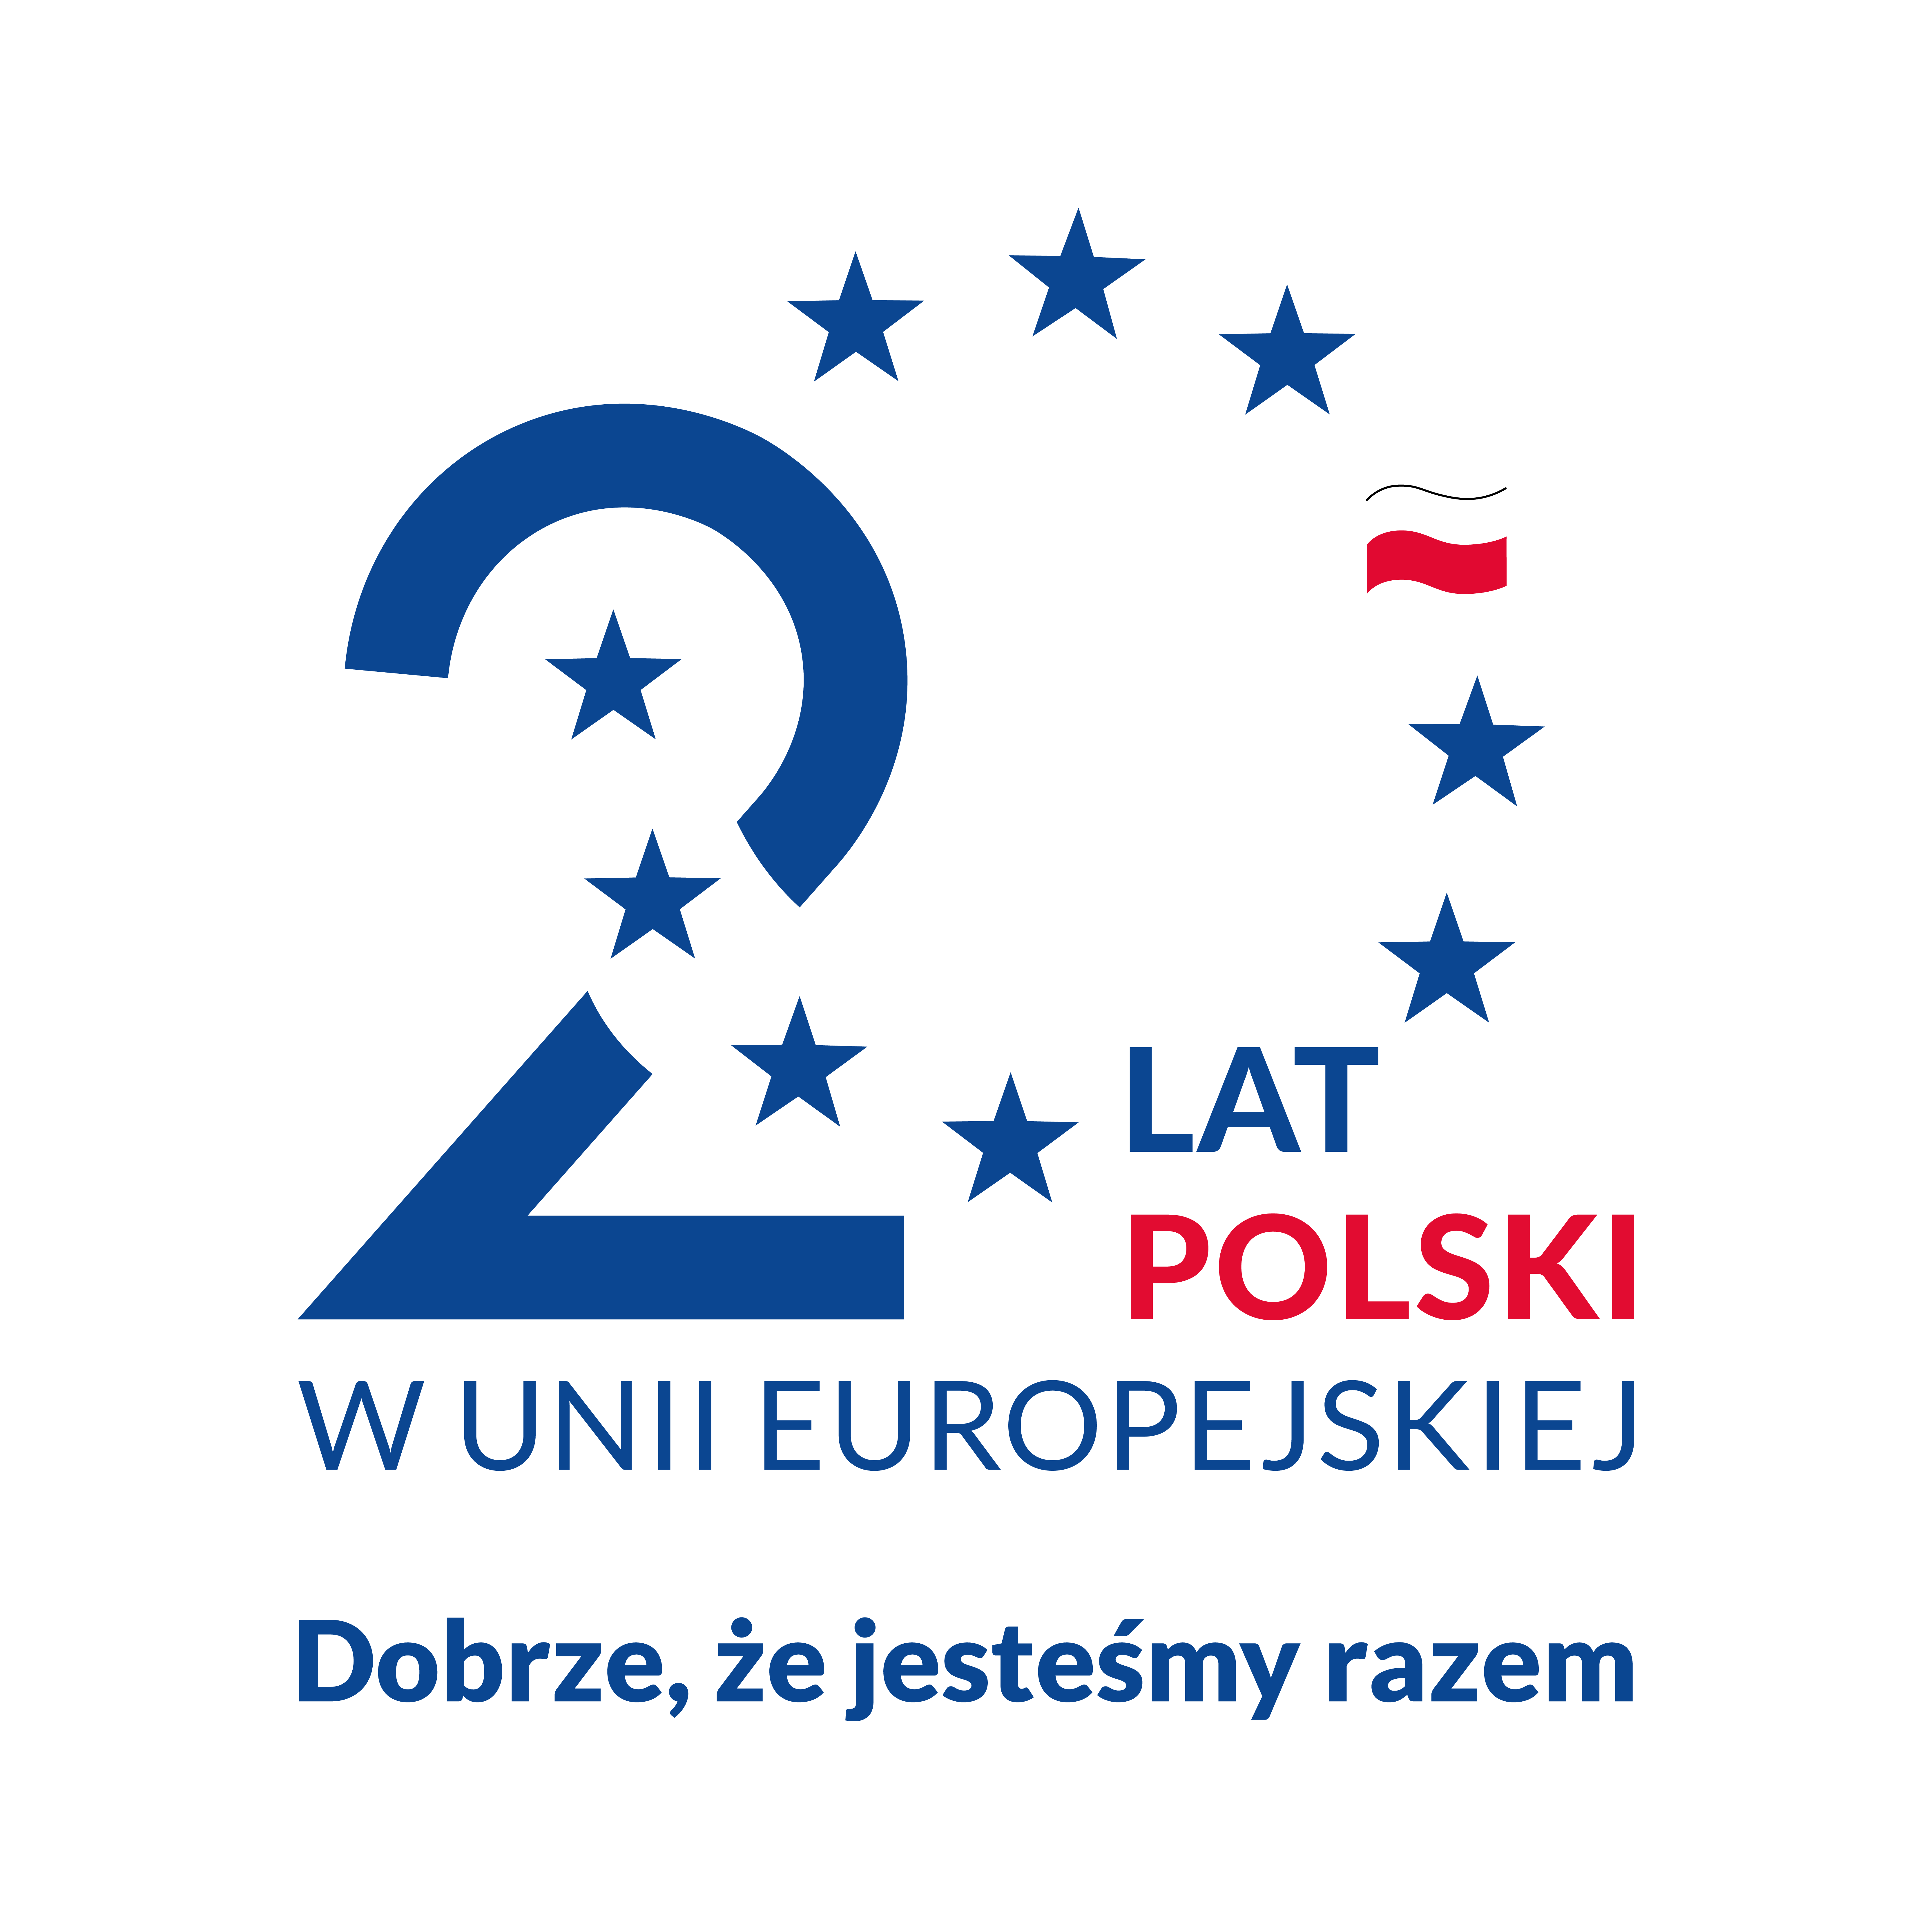 Ikonografika. Po lewej cyfra 2 przecinana okręgiem w kształcie cyfry 0 utworzonej z gwiazd. Zamiast jednej z gwiazd flaga Polski. Wpleciony napis "Lat Polski w Unii Europejskiej. Dobrze, że jesteśmy razem".